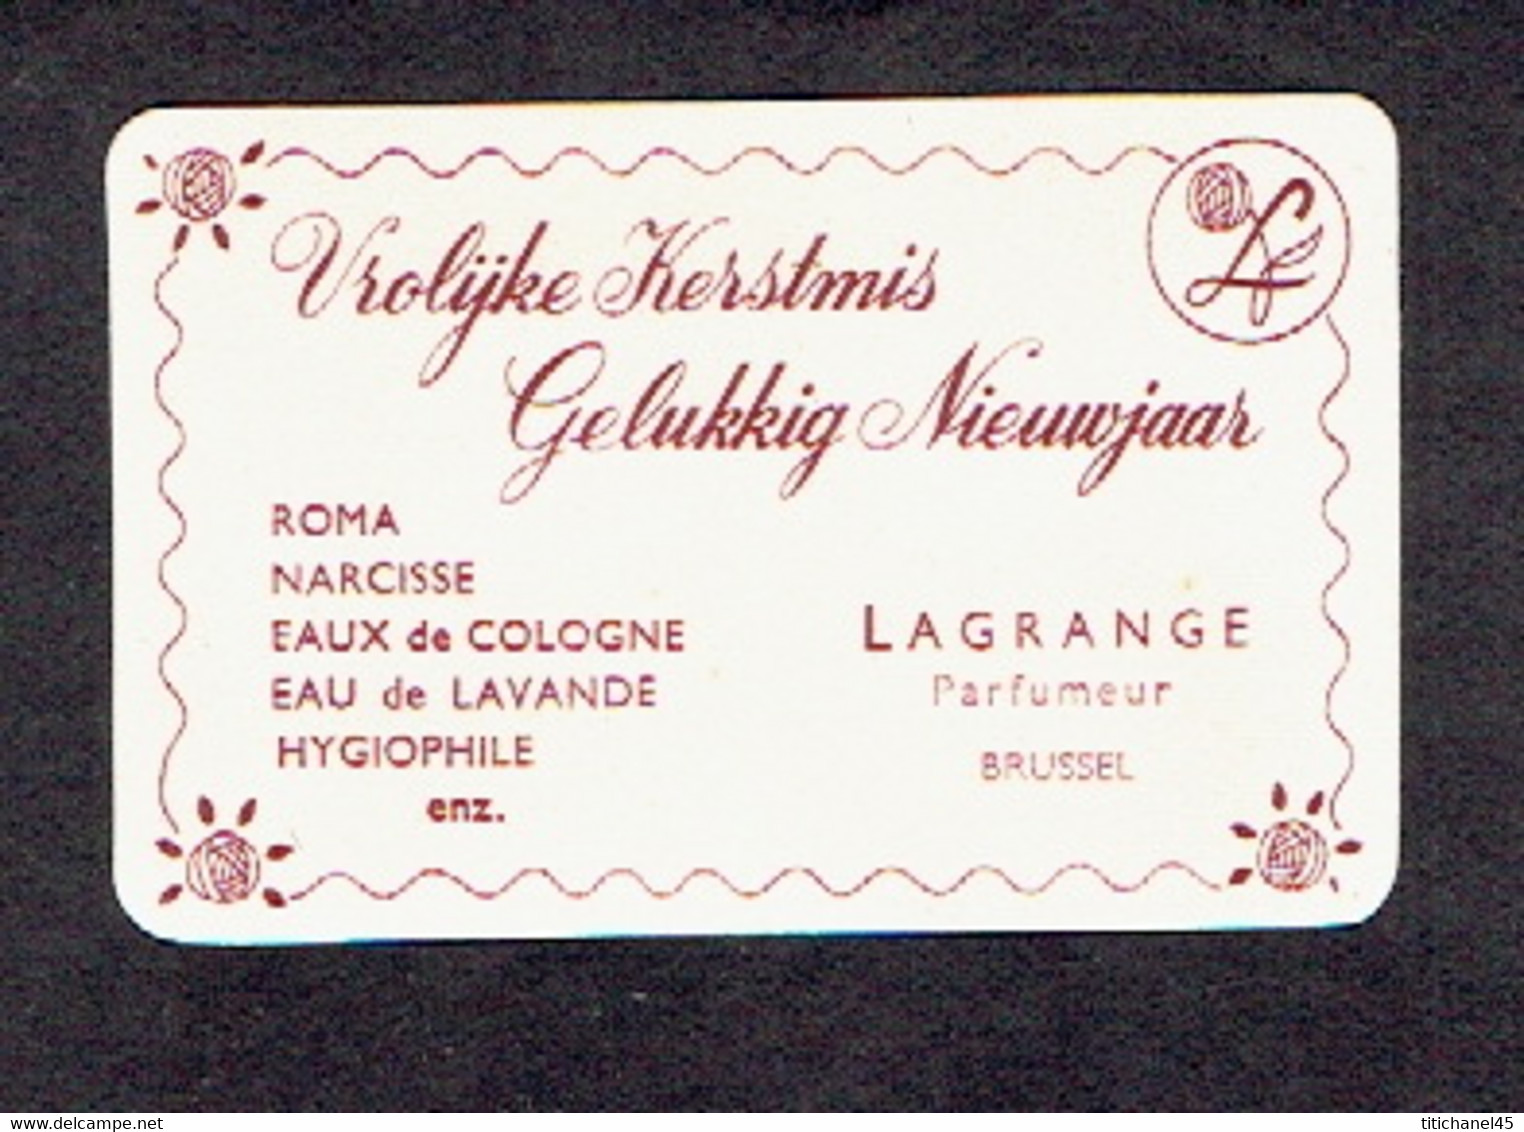 Carte Parfum VROLIJKE KERSTMIS GELUKKIG NIEUXJAAR De LAGRANGE - ROMA-NARCISSE-EAU DE COLOGNE-EAU DE LAVANDE- HYGIOPHILE - Anciennes (jusque 1960)